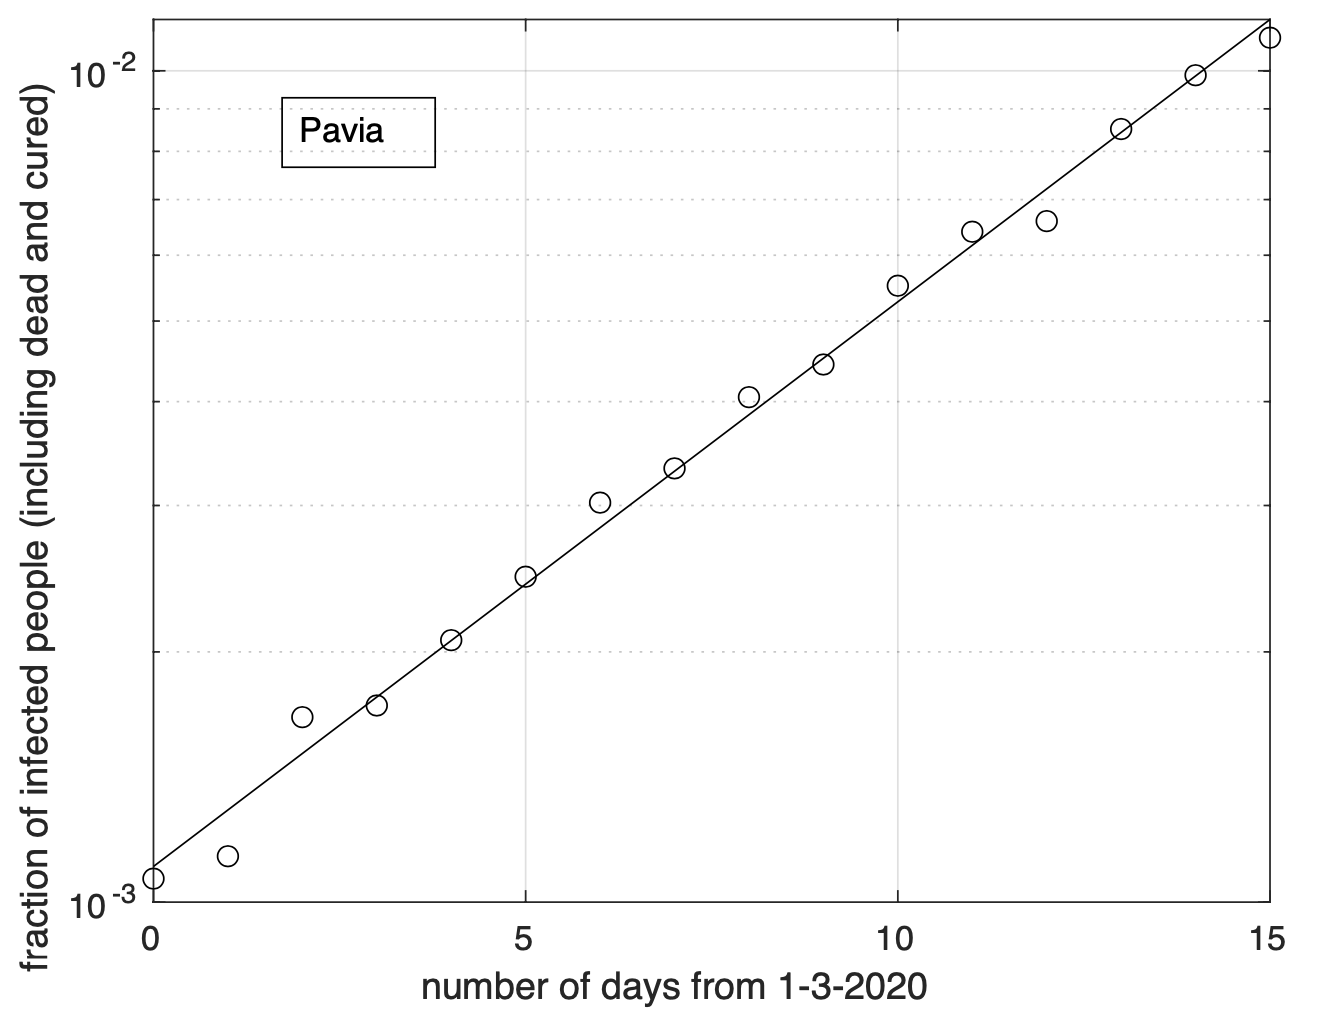 Figure 5. Sequenza temporale della frazione dei contagiati osservati nella provincia di Pavia rispetto alla popolazione della provincia (in scala semi-logaritmica). Il miglior fit con un modello geometrico è sovrapposto ai dati.